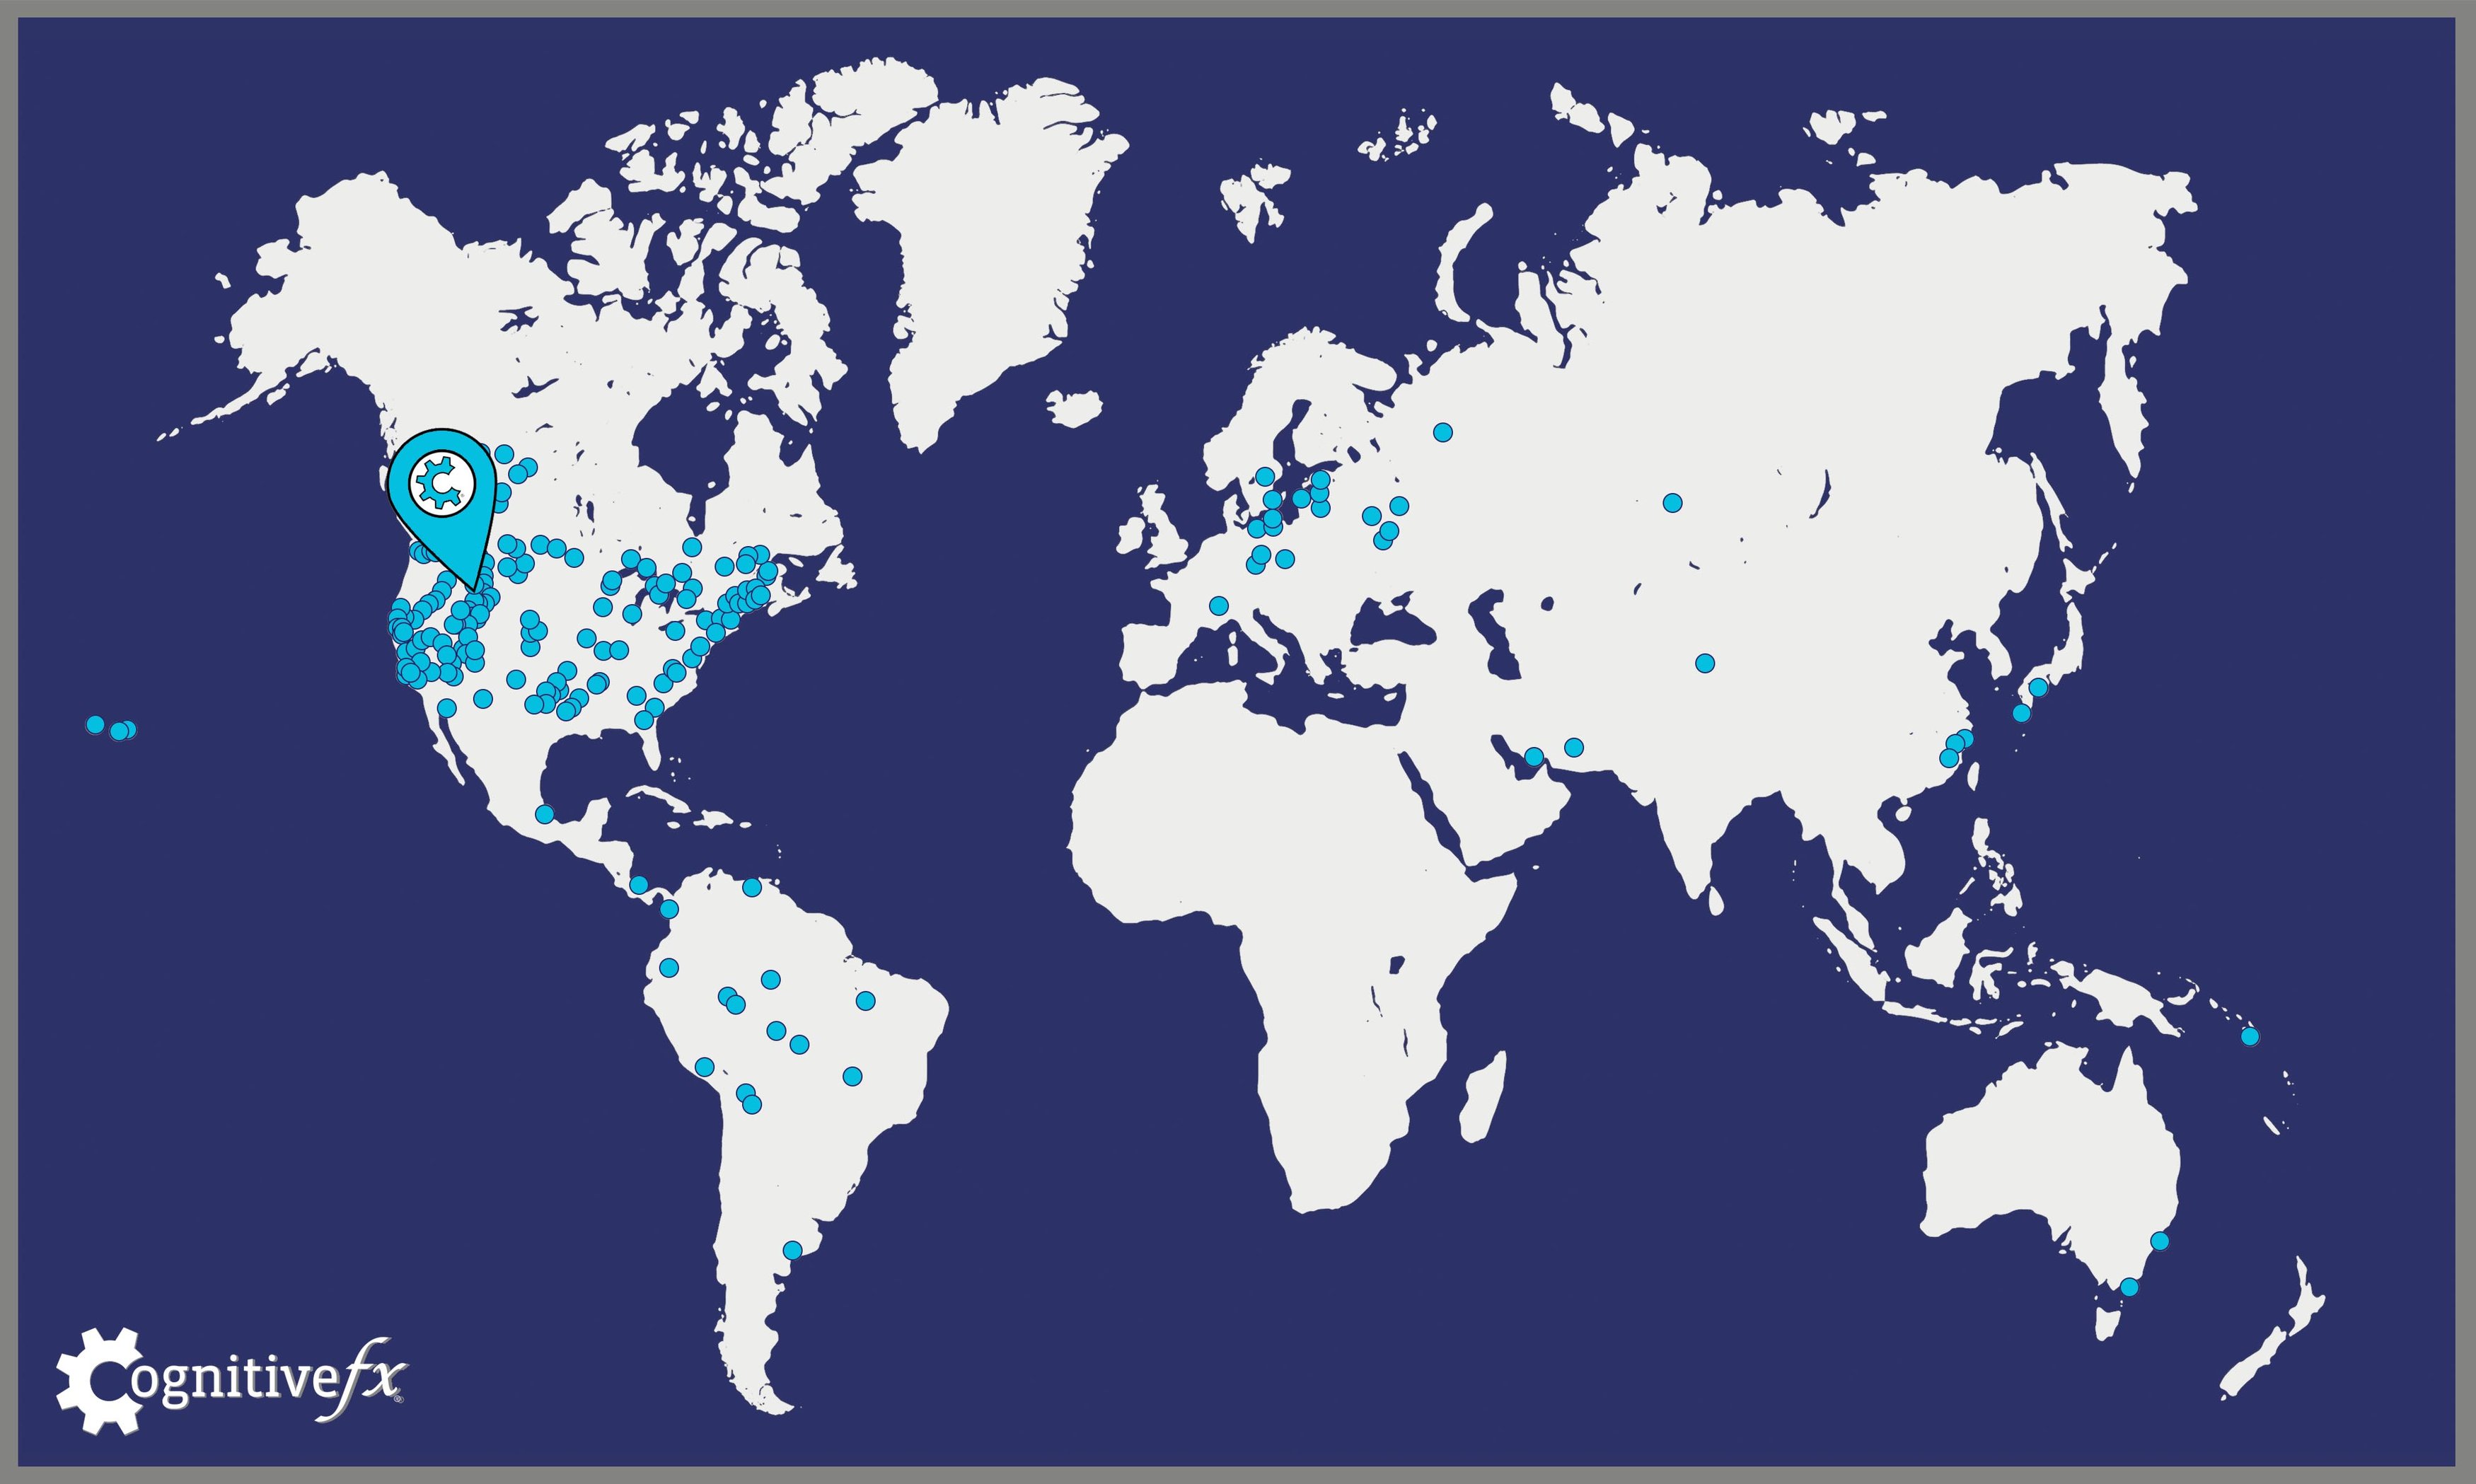 cfx patients around the world